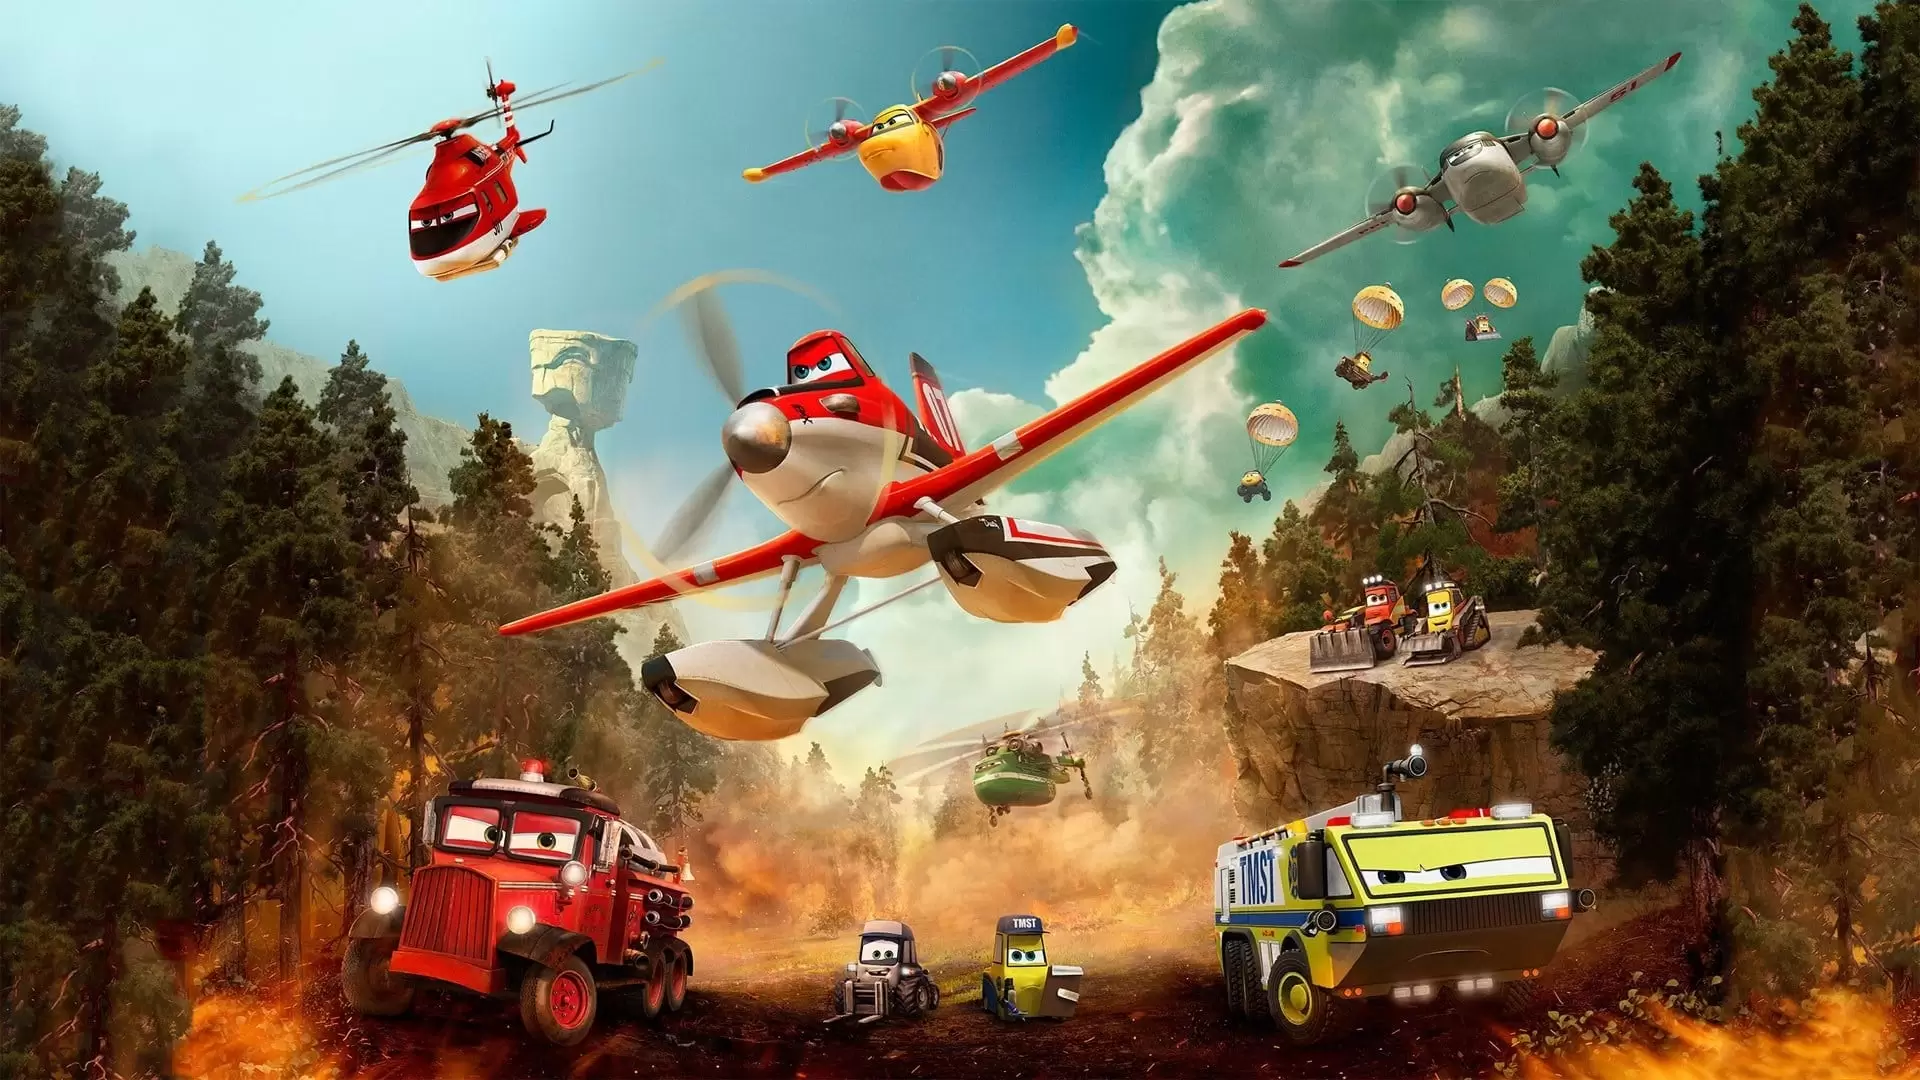 دانلود انیمیشن Planes: Fire & Rescue 2014 با زیرنویس فارسی